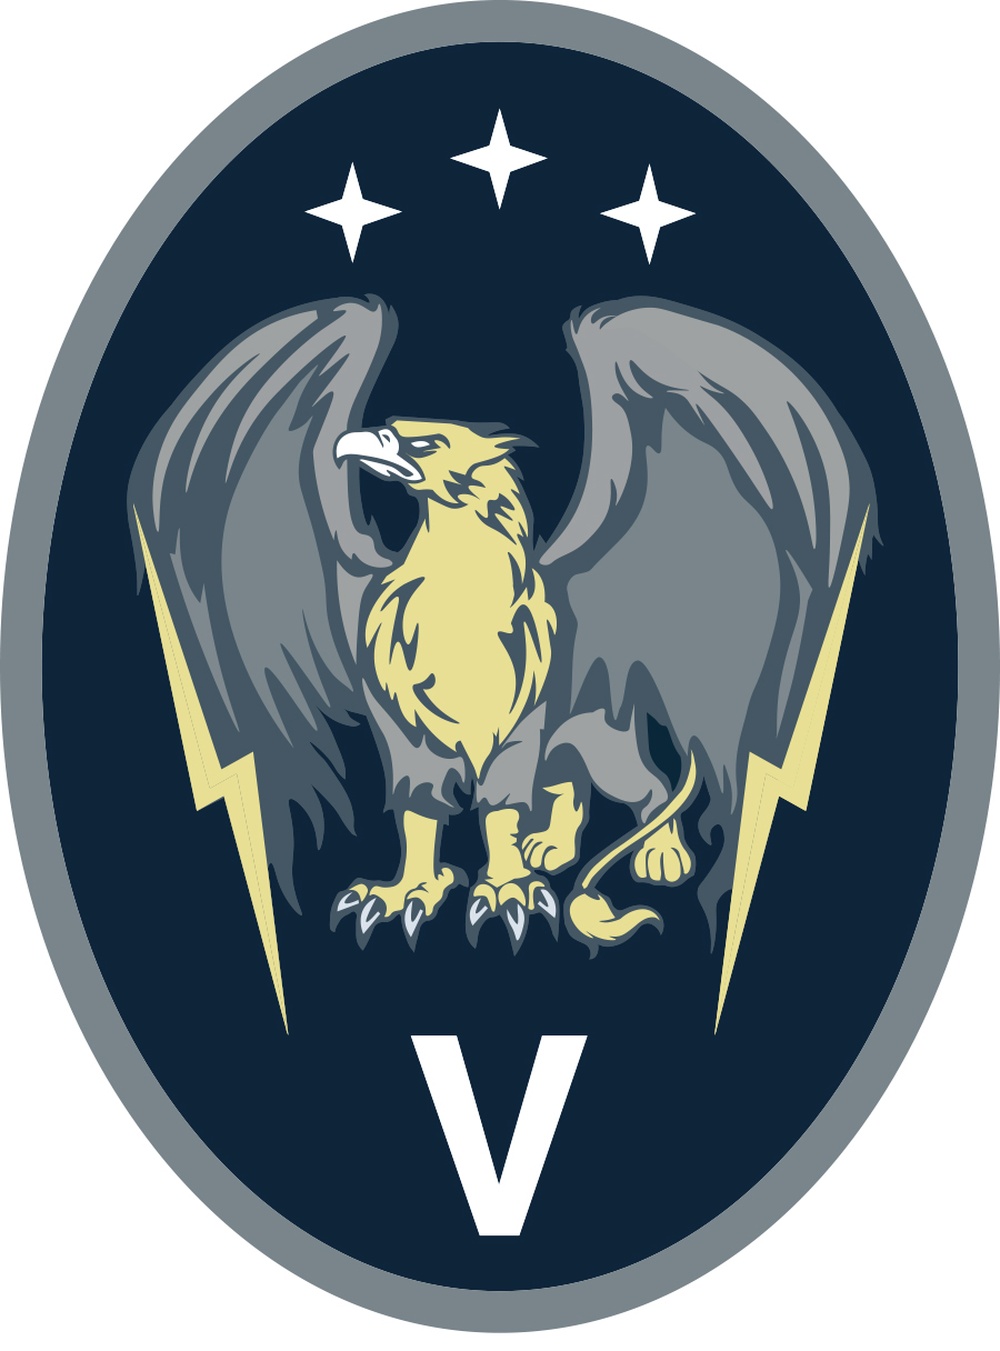 5 SPCS - Official Emblem